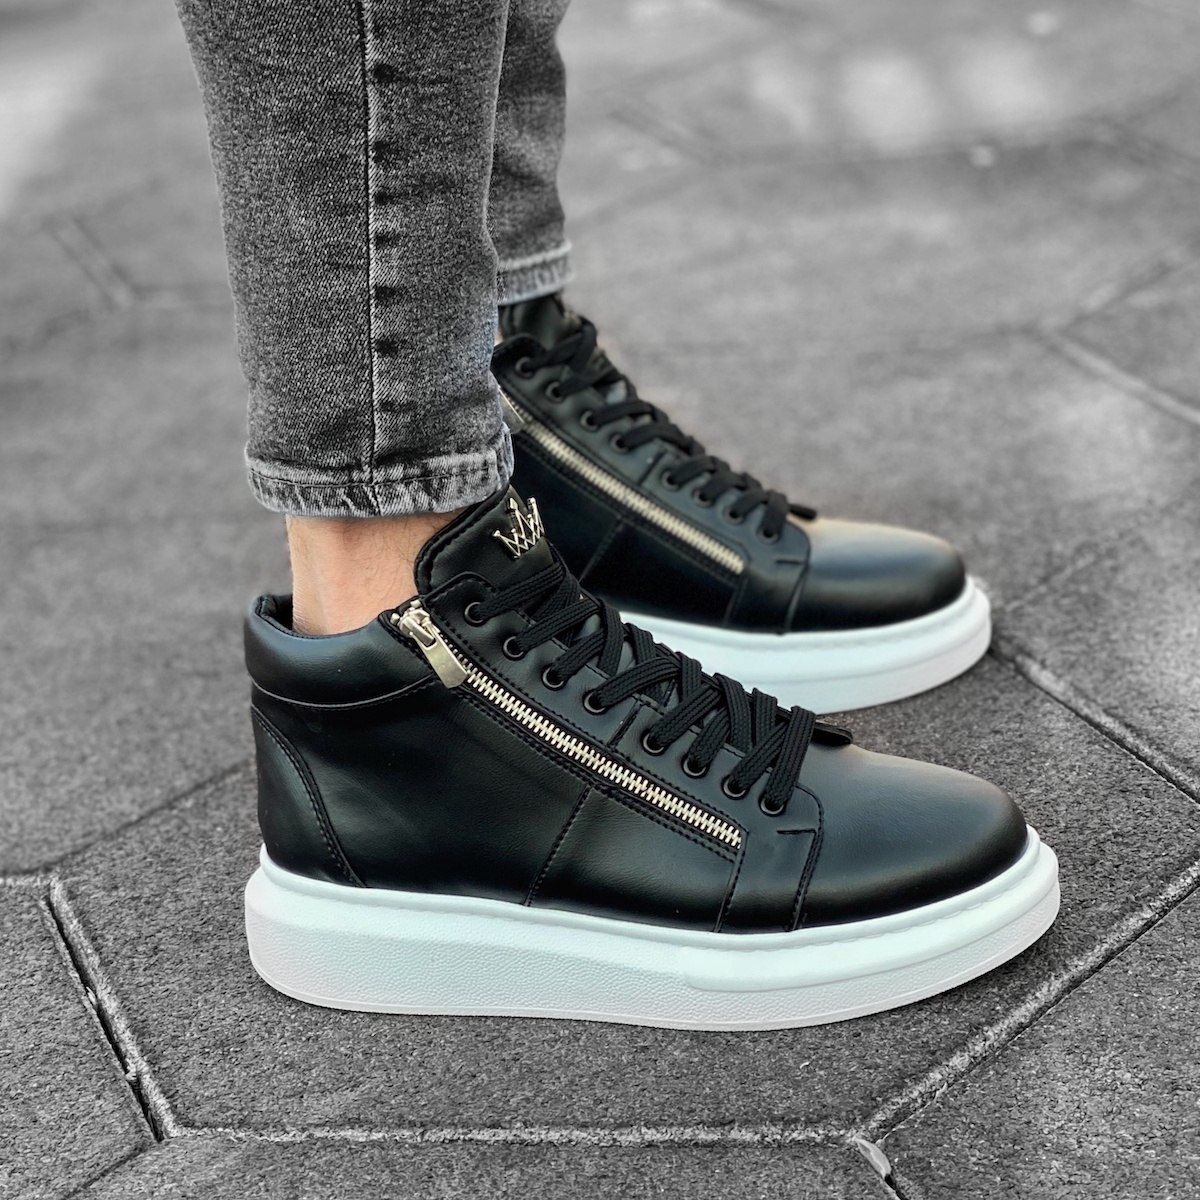 Herren High Top Sneakers Designer Schuhe mit Reissverschluss in schwarz-weiss - 2